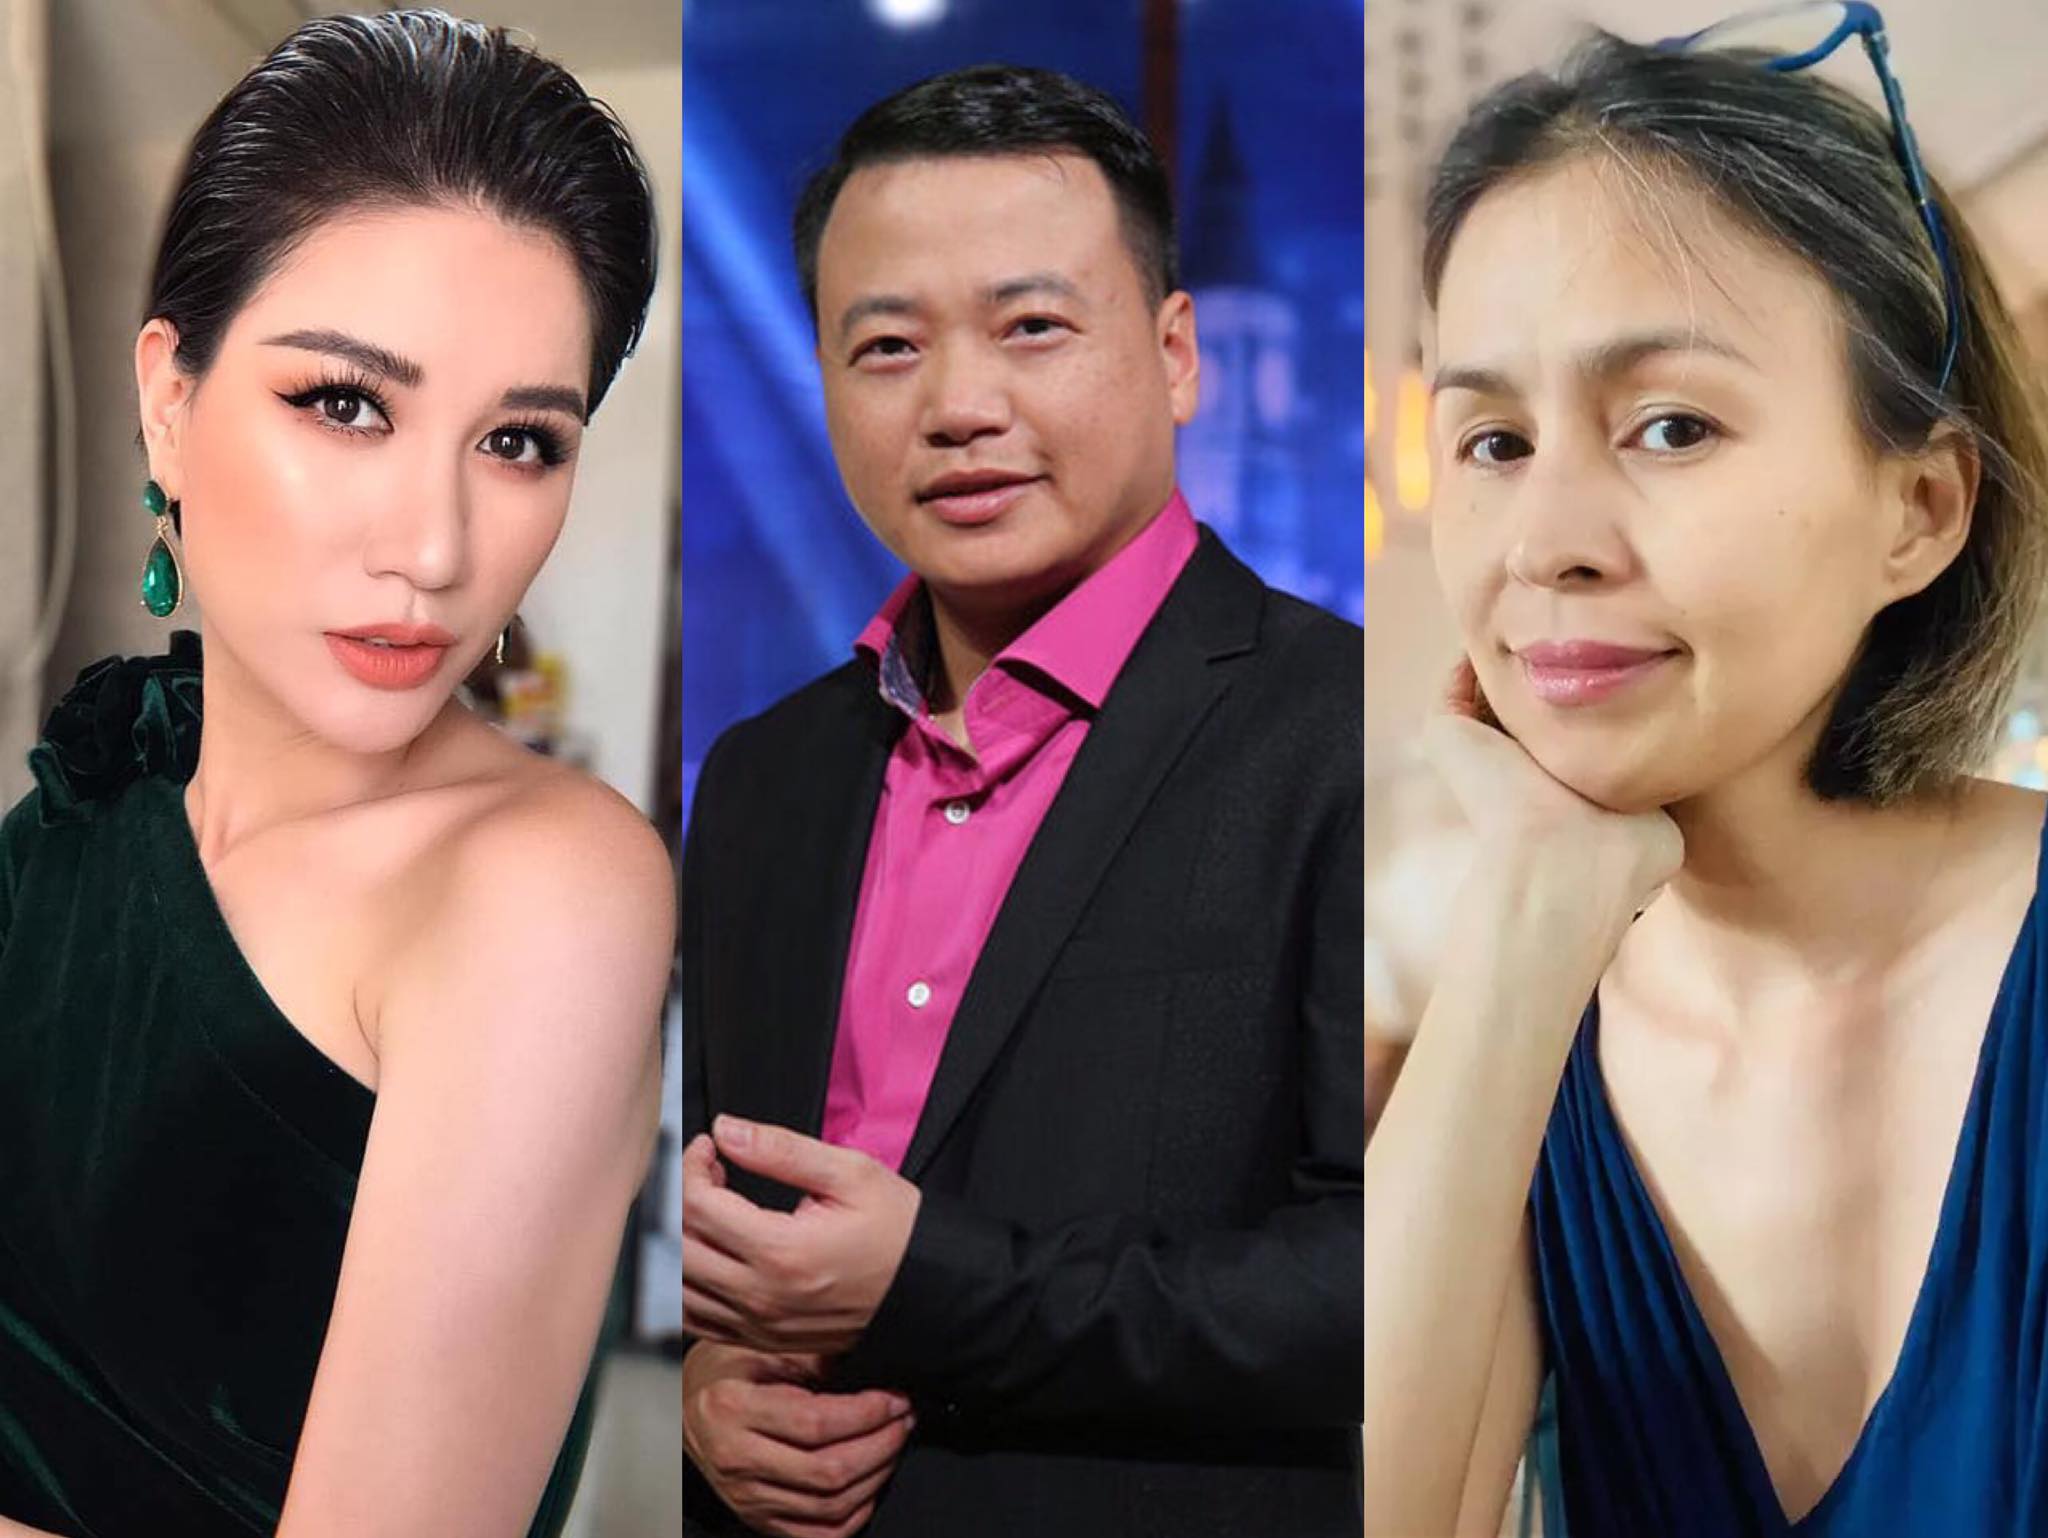 Ý kiến 'phụ nữ thích trai 6 xe hơn 6 múi' của Shark Bình gây tranh cãi: Trang Trần, vợ cũ Huy Khánh lên tiếng phản bác 